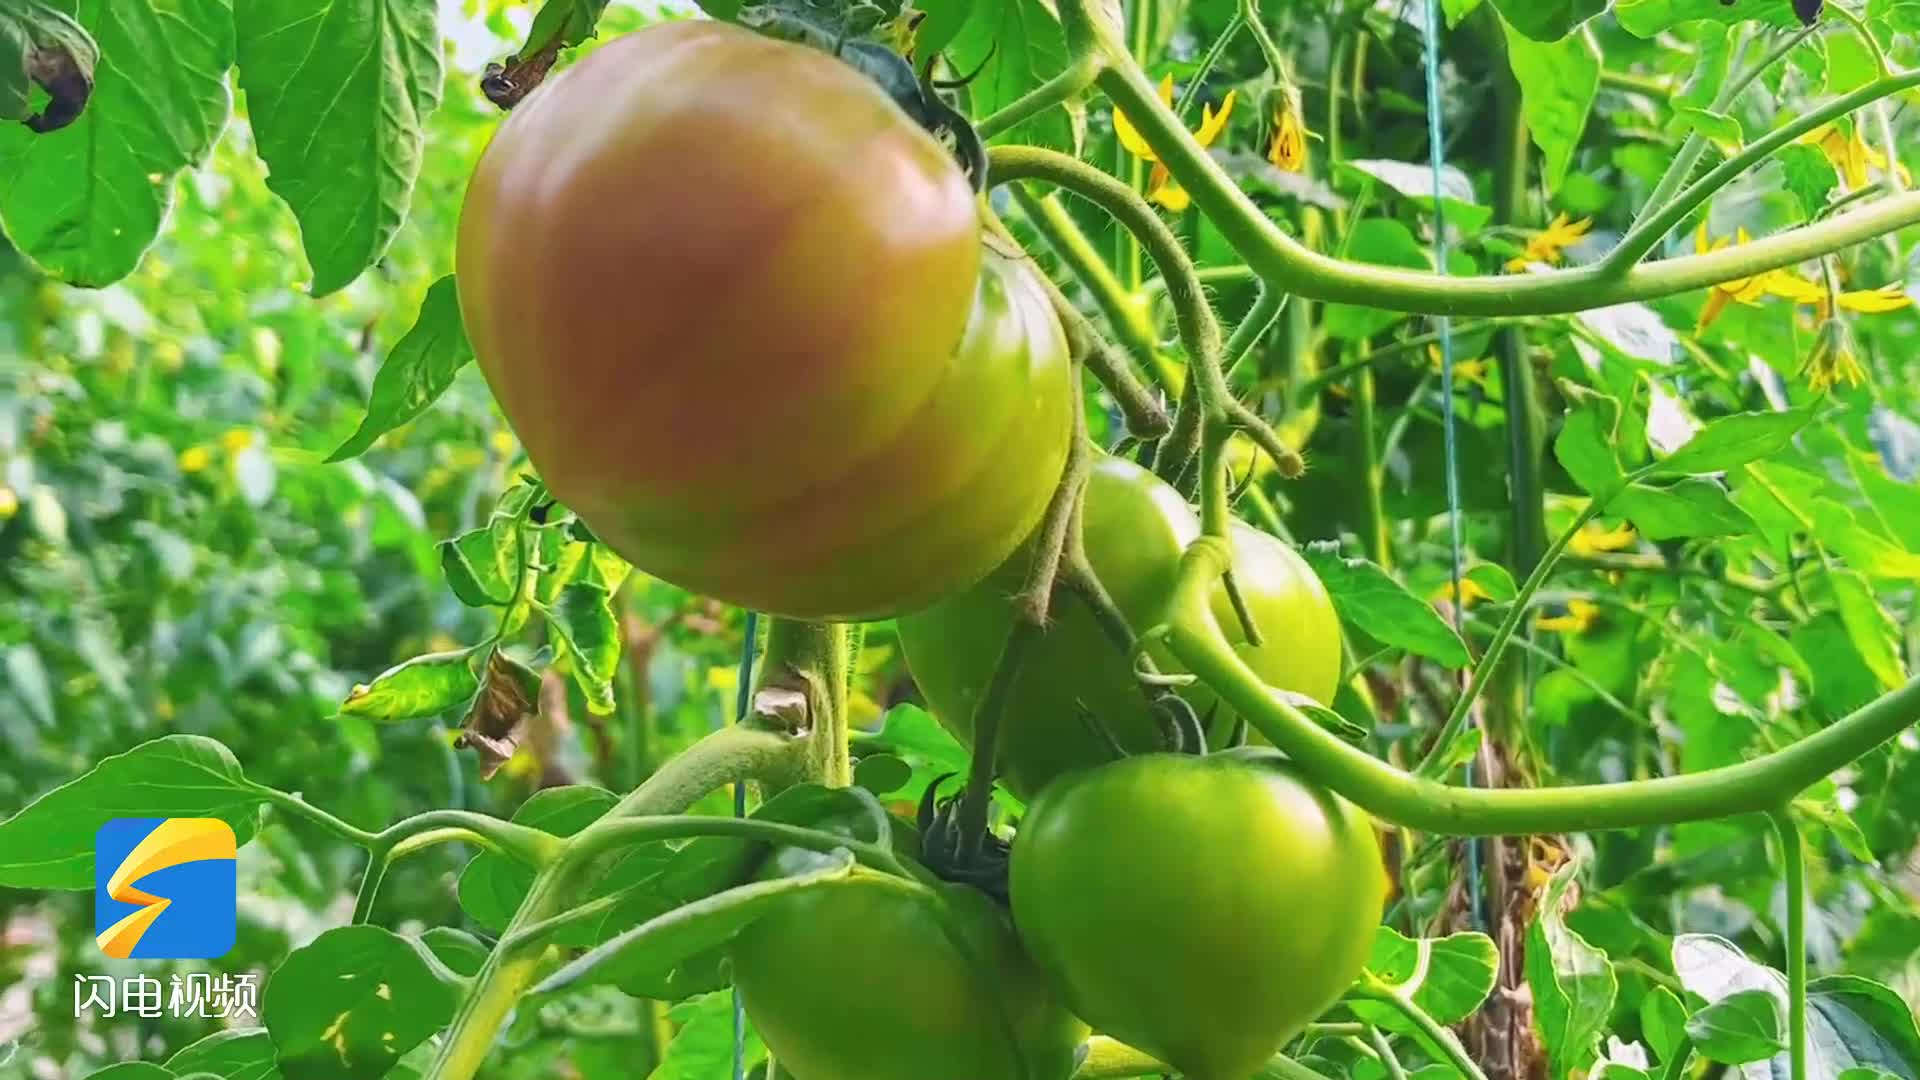 枣庄大棚西红柿成熟 小小西红柿成了“致富果”